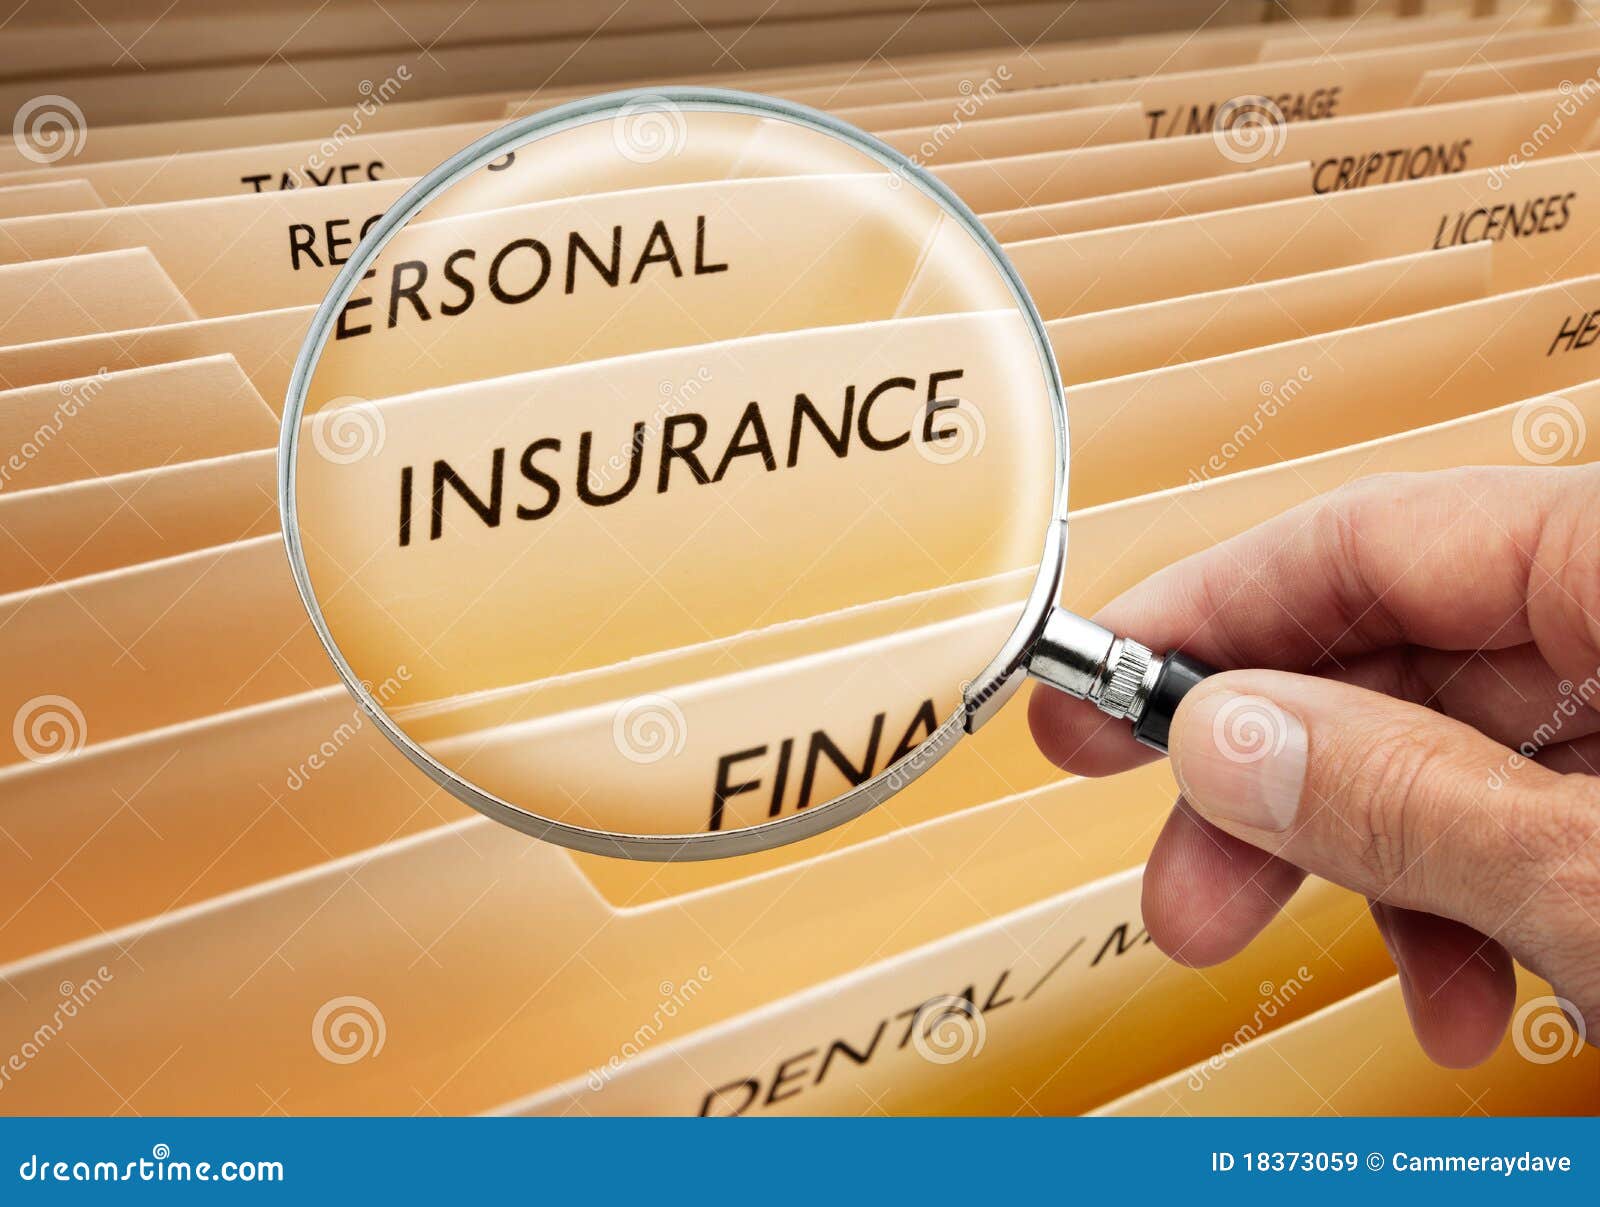 insurance file folders